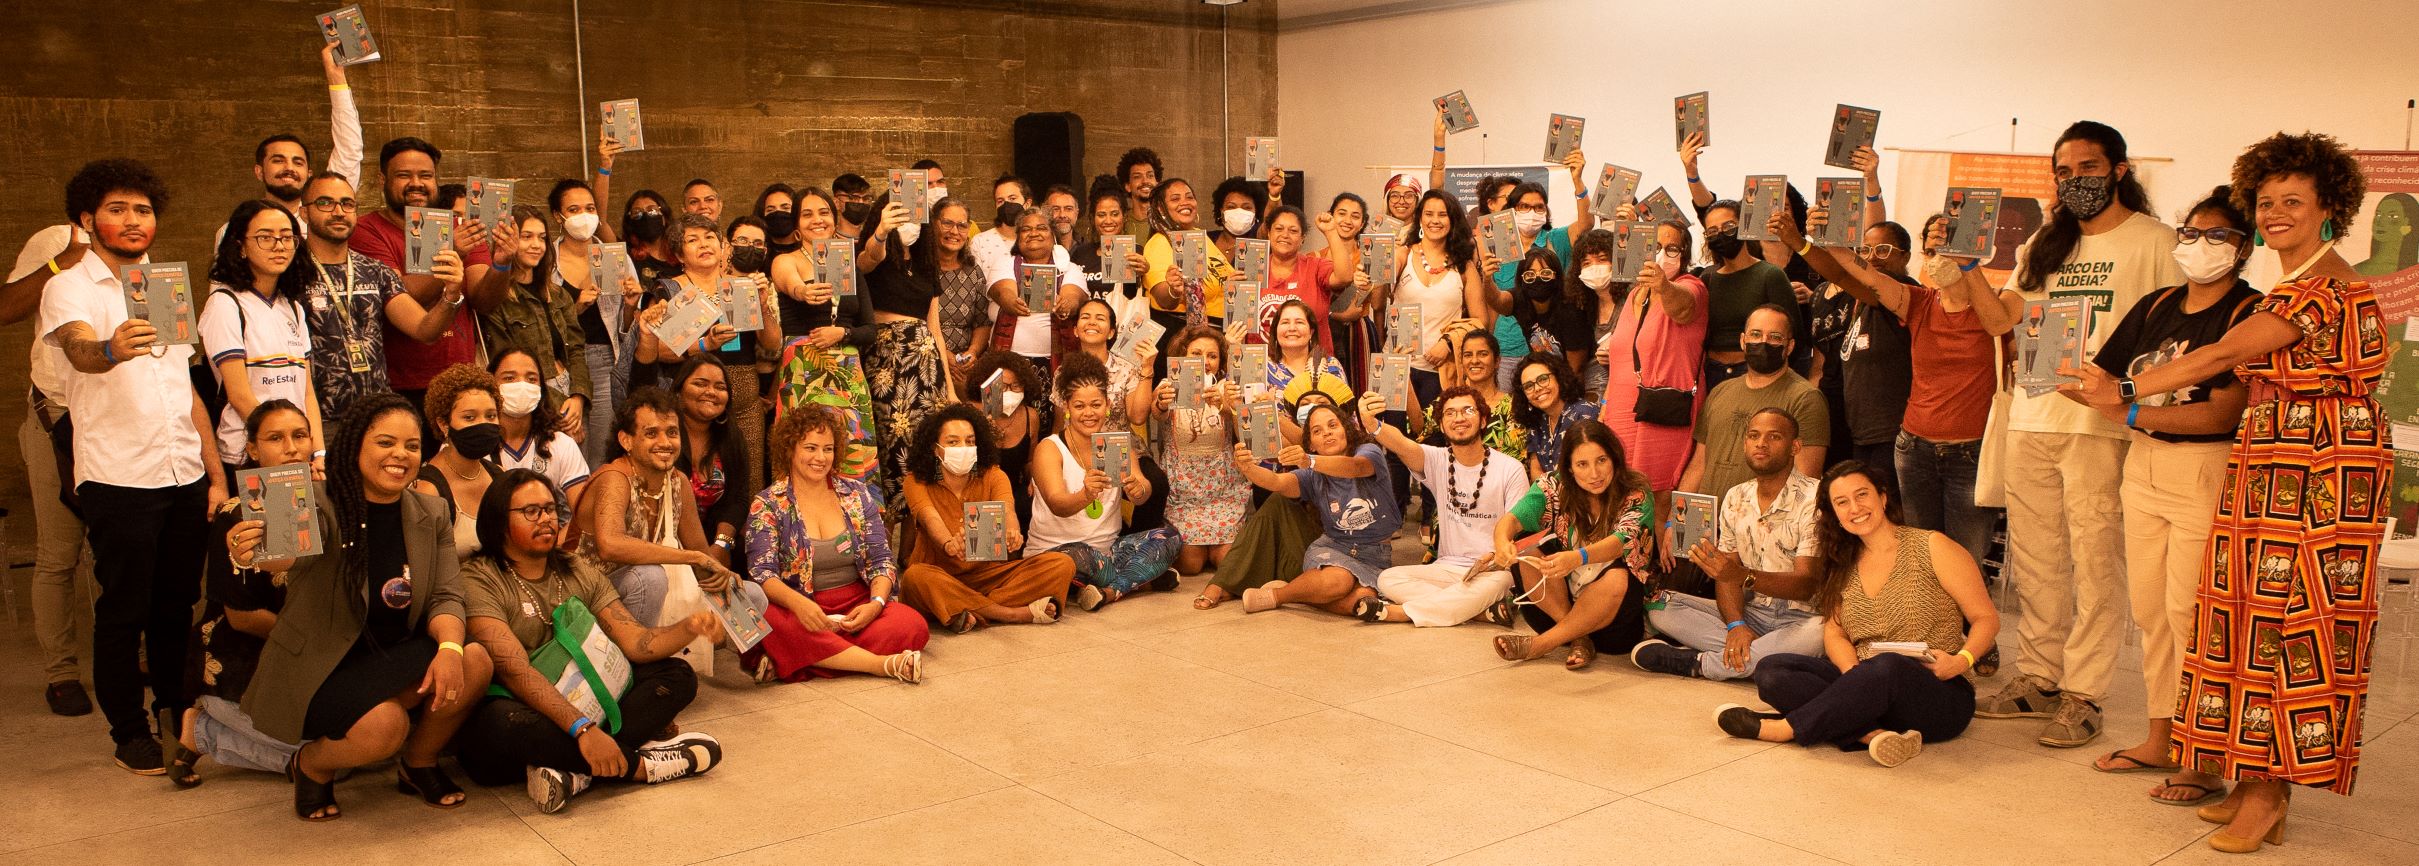 Lançamento do livro “Quem precisa de justiça climática no Brasil?”, durante a na Conferência Brasileira de Mudança Climática em Recife (Foto: Pedro Andrade)